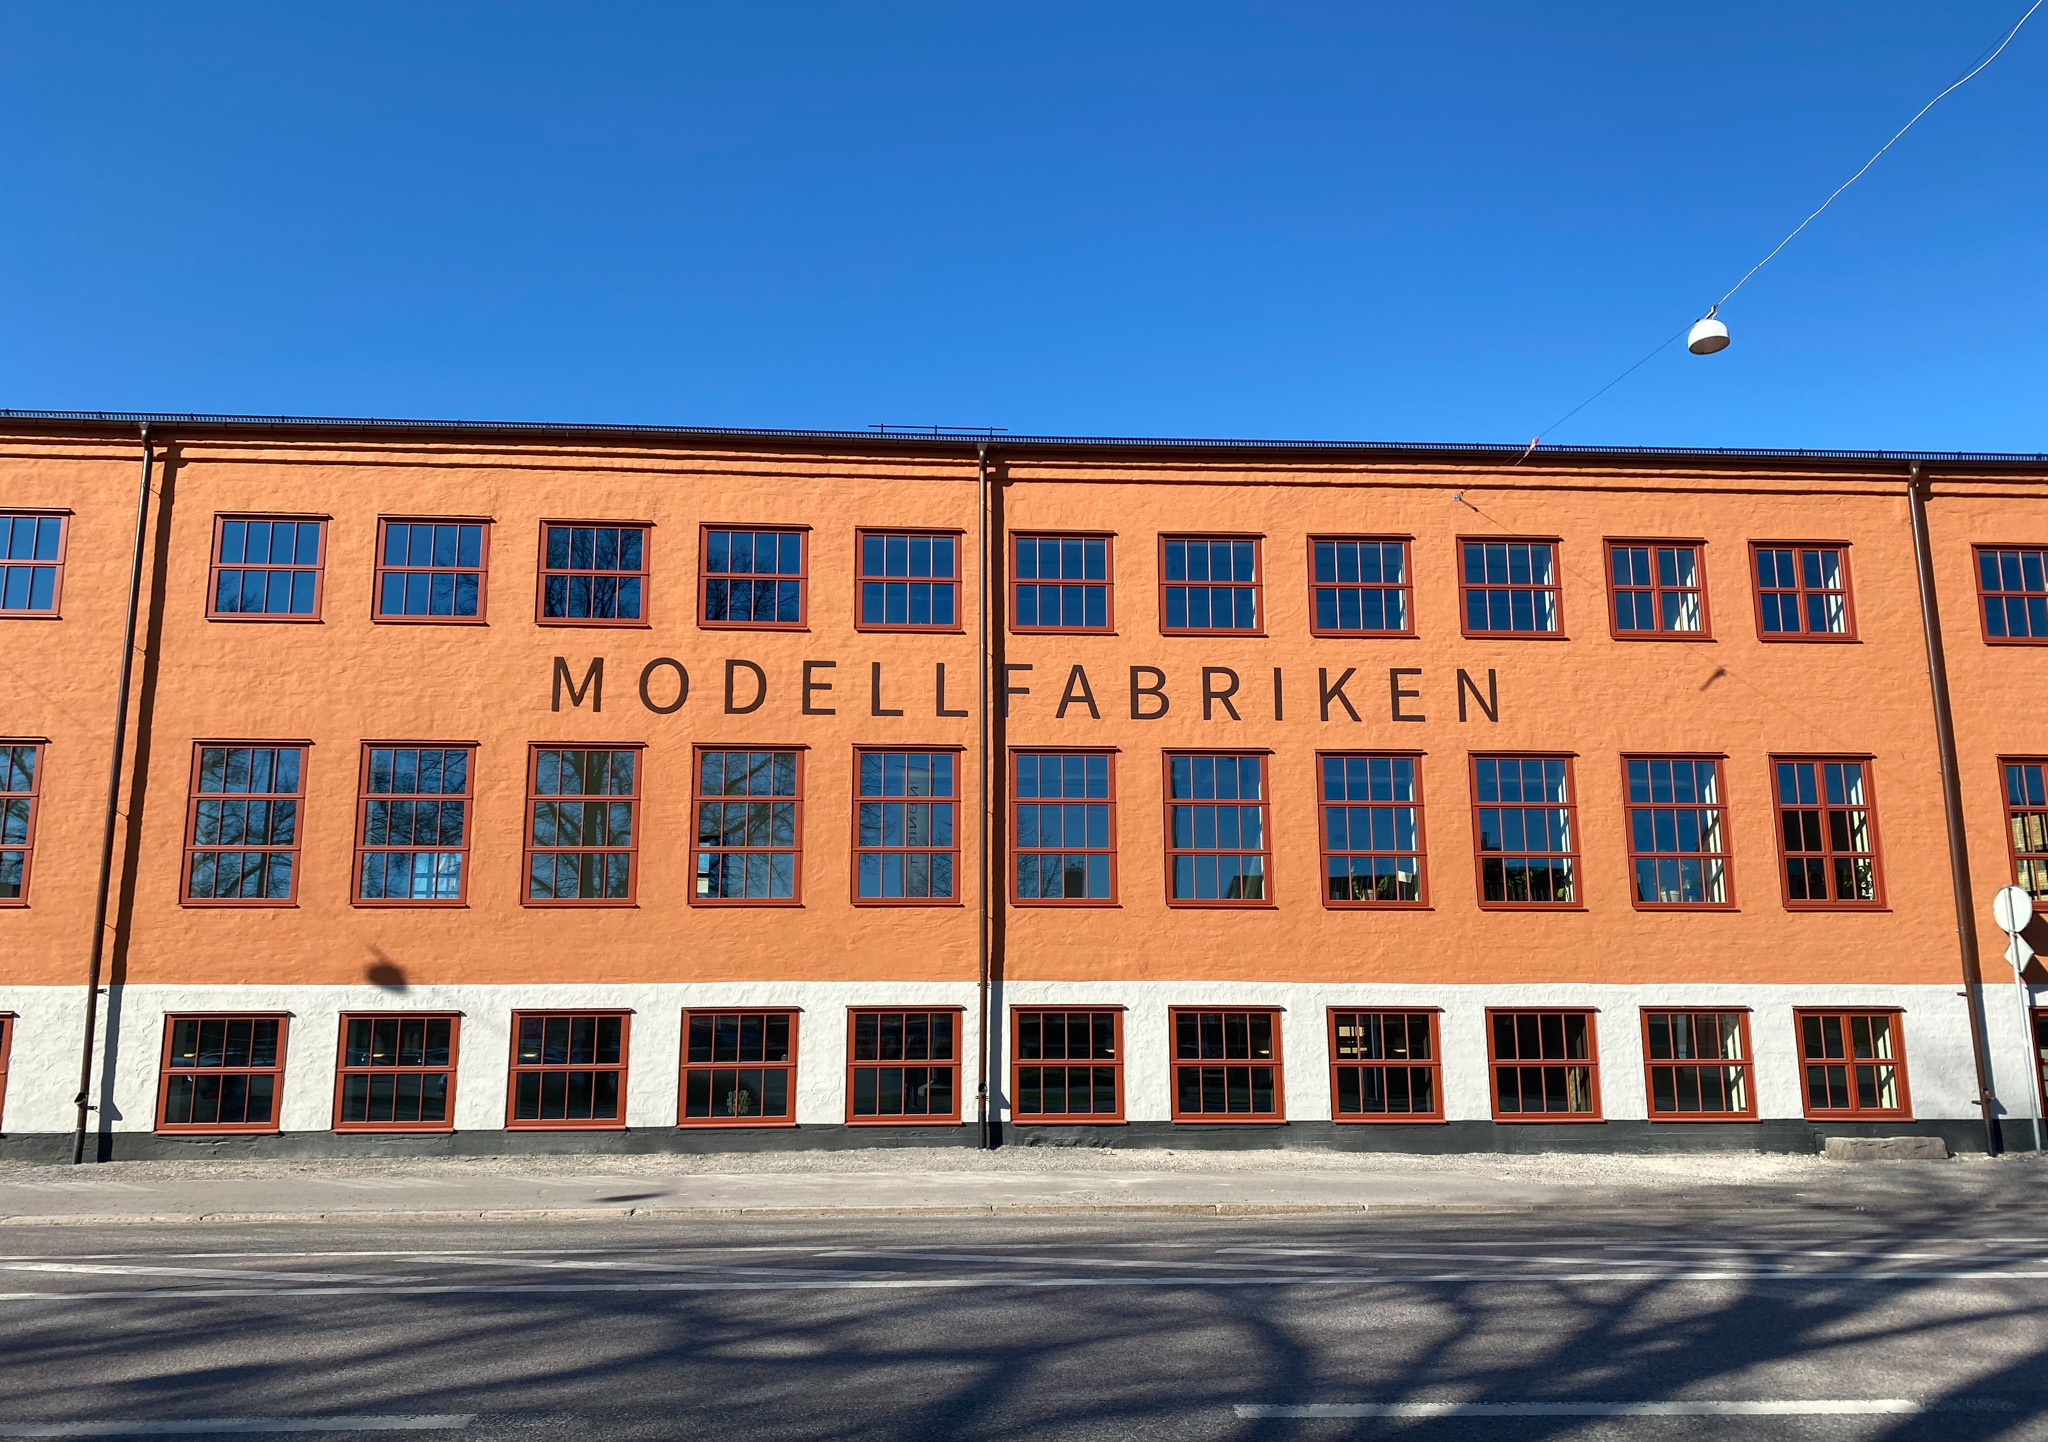 Fasaden på Modellfabriken med en skylt som säger "Modellfabriken"